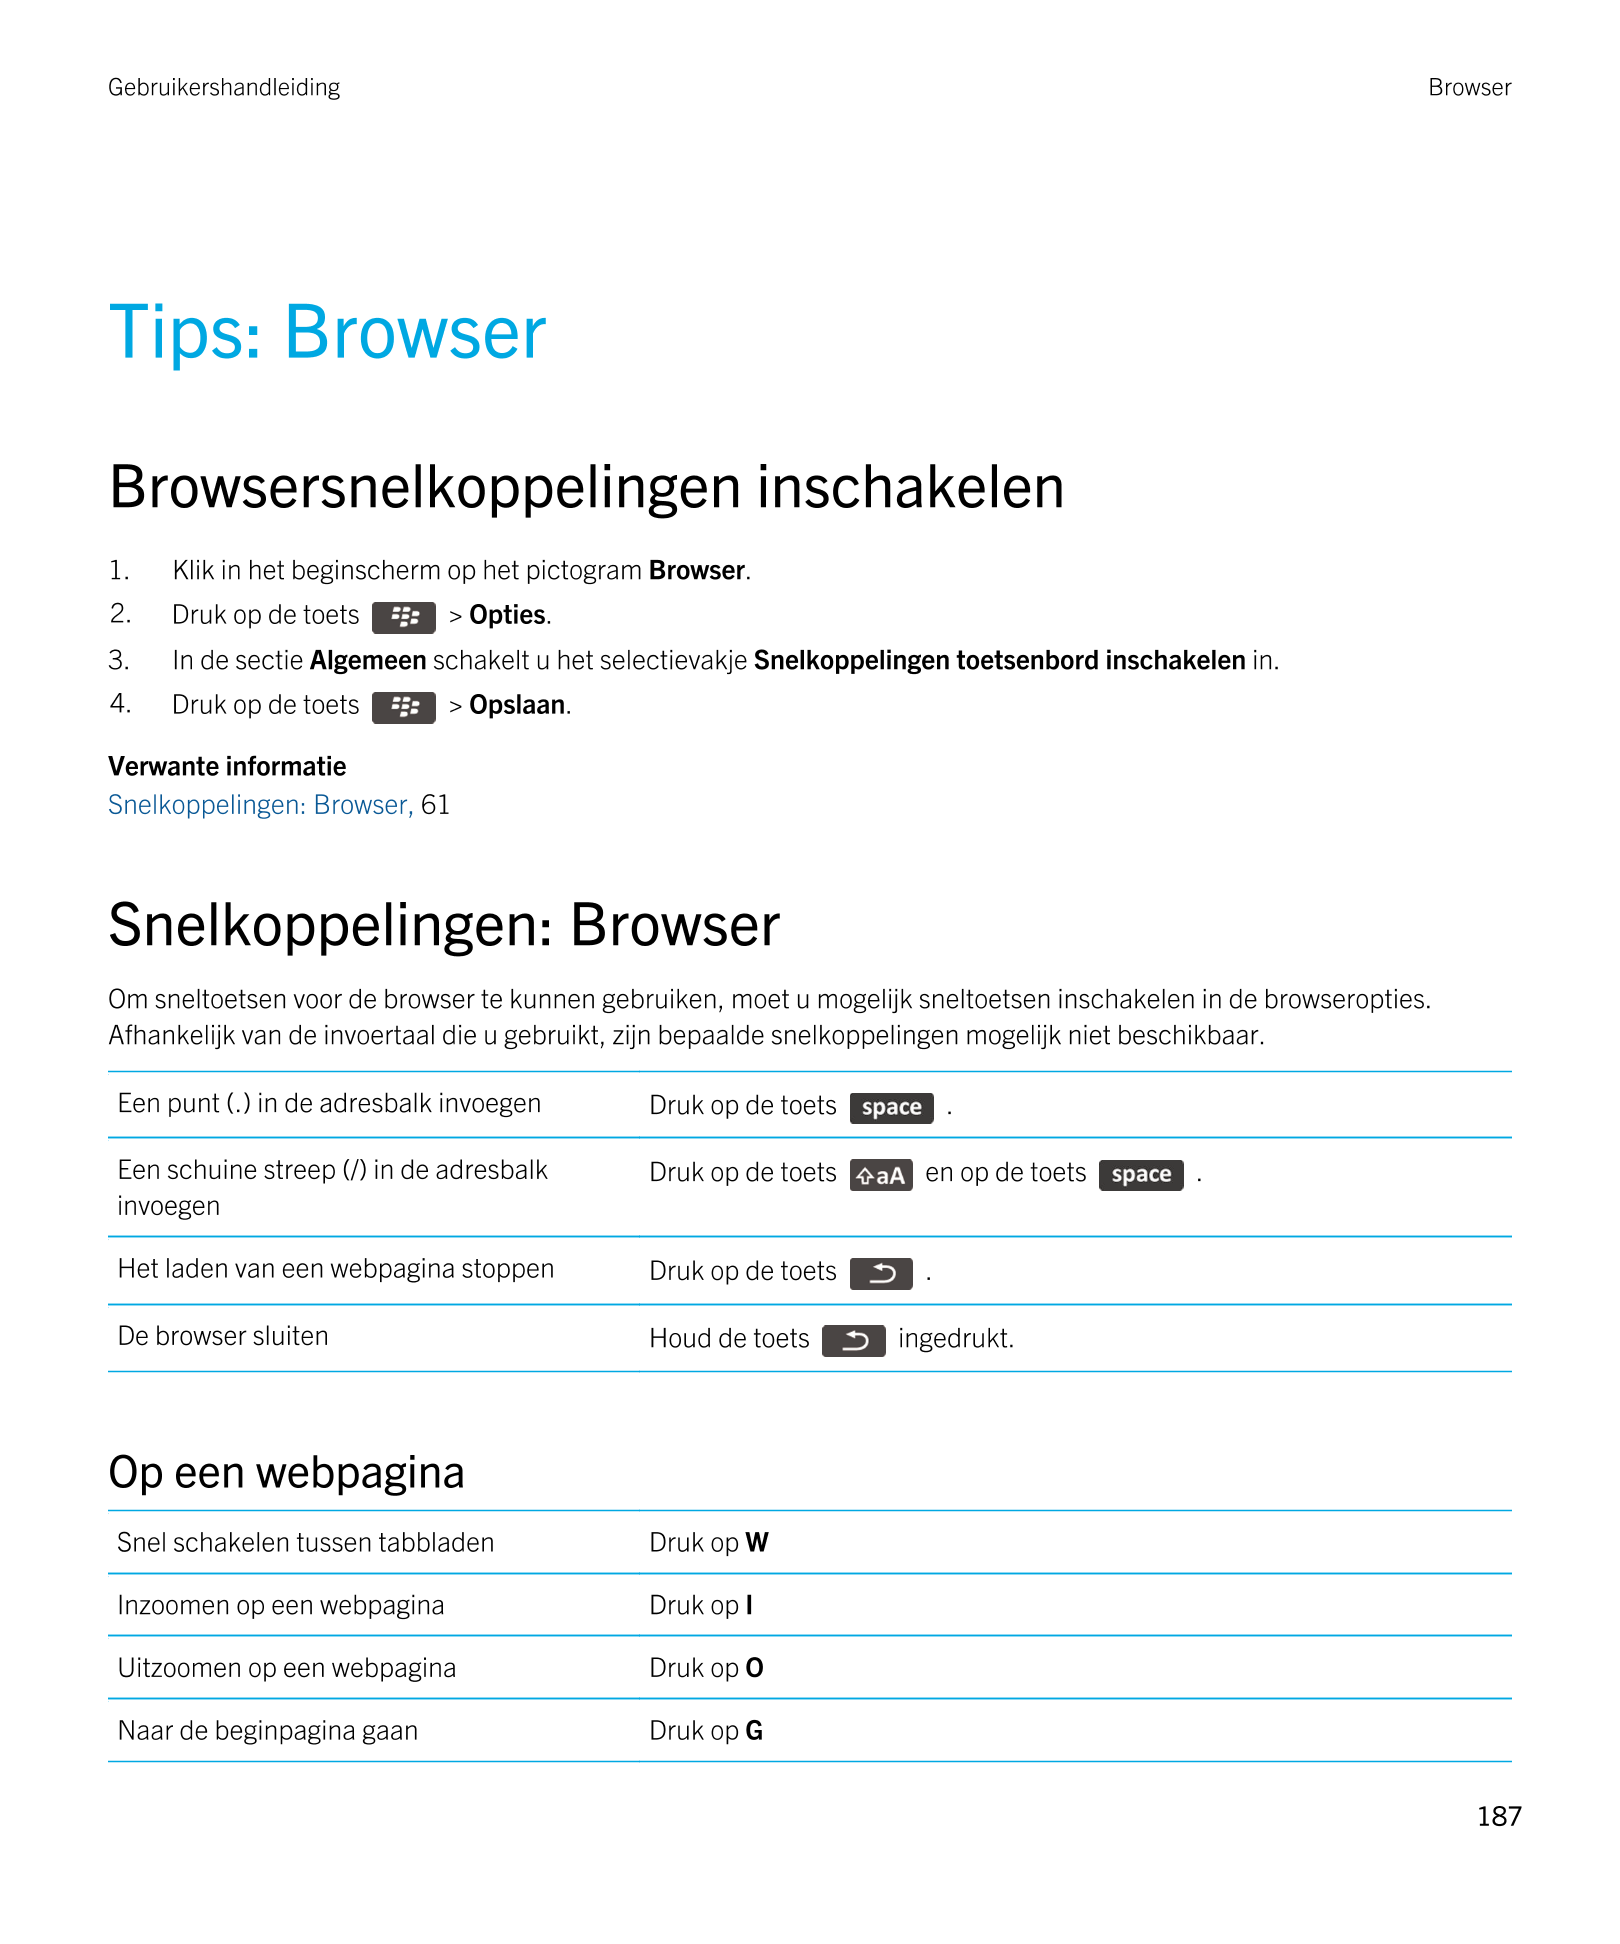 Gebruikershandleiding Browser
Tips: Browser
Browsersnelkoppelingen inschakelen
1. Klik in het beginscherm op het pictogram  Brow